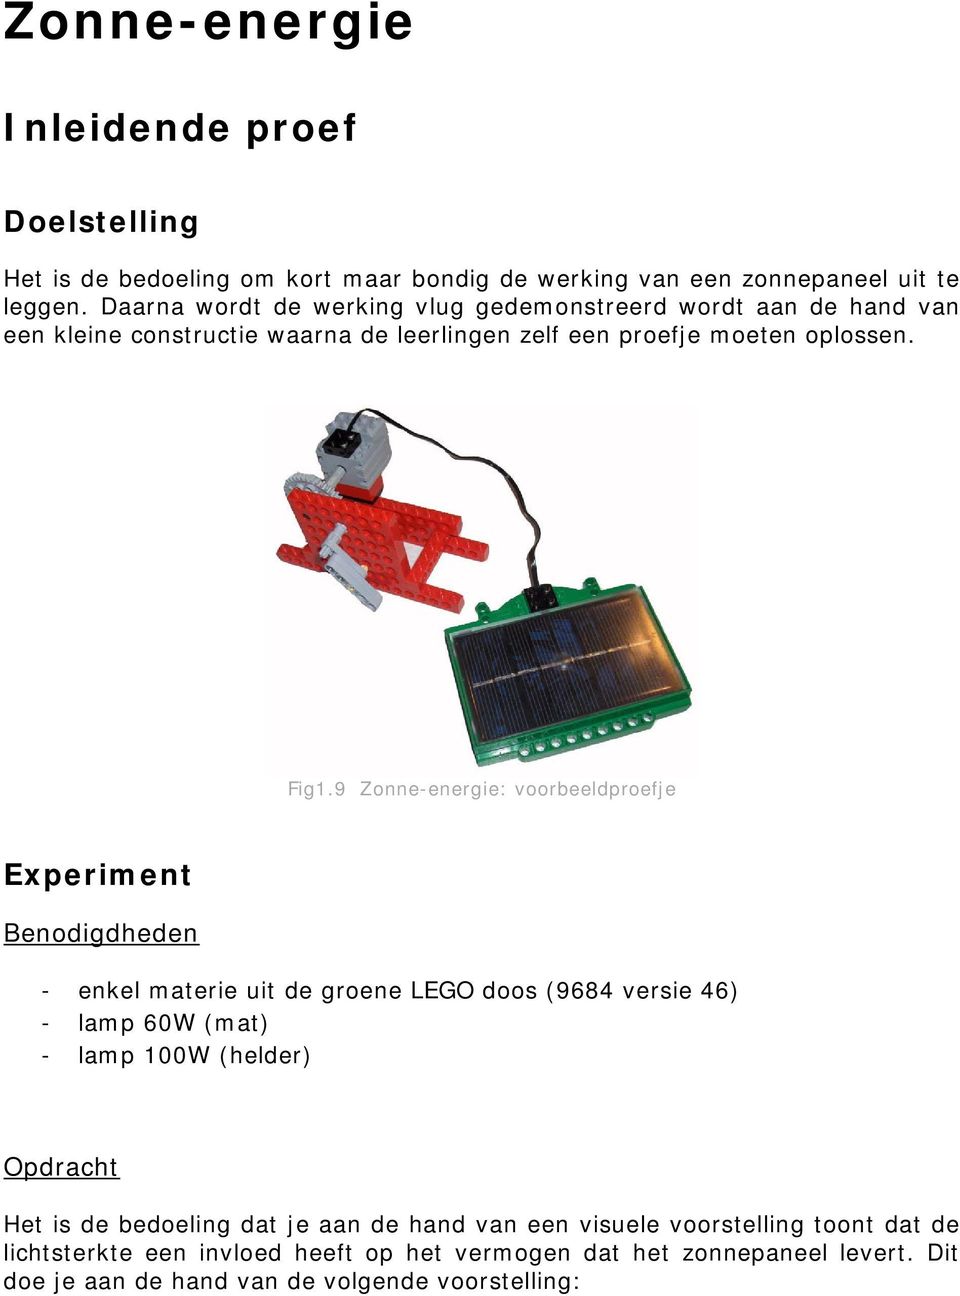 9 Zonne-energie: voorbeeldproefje Experiment Benodigdheden - enkel materie uit de groene LEGO doos (9684 versie 46) - lamp 60W (mat) - lamp 100W (helder) Opdracht